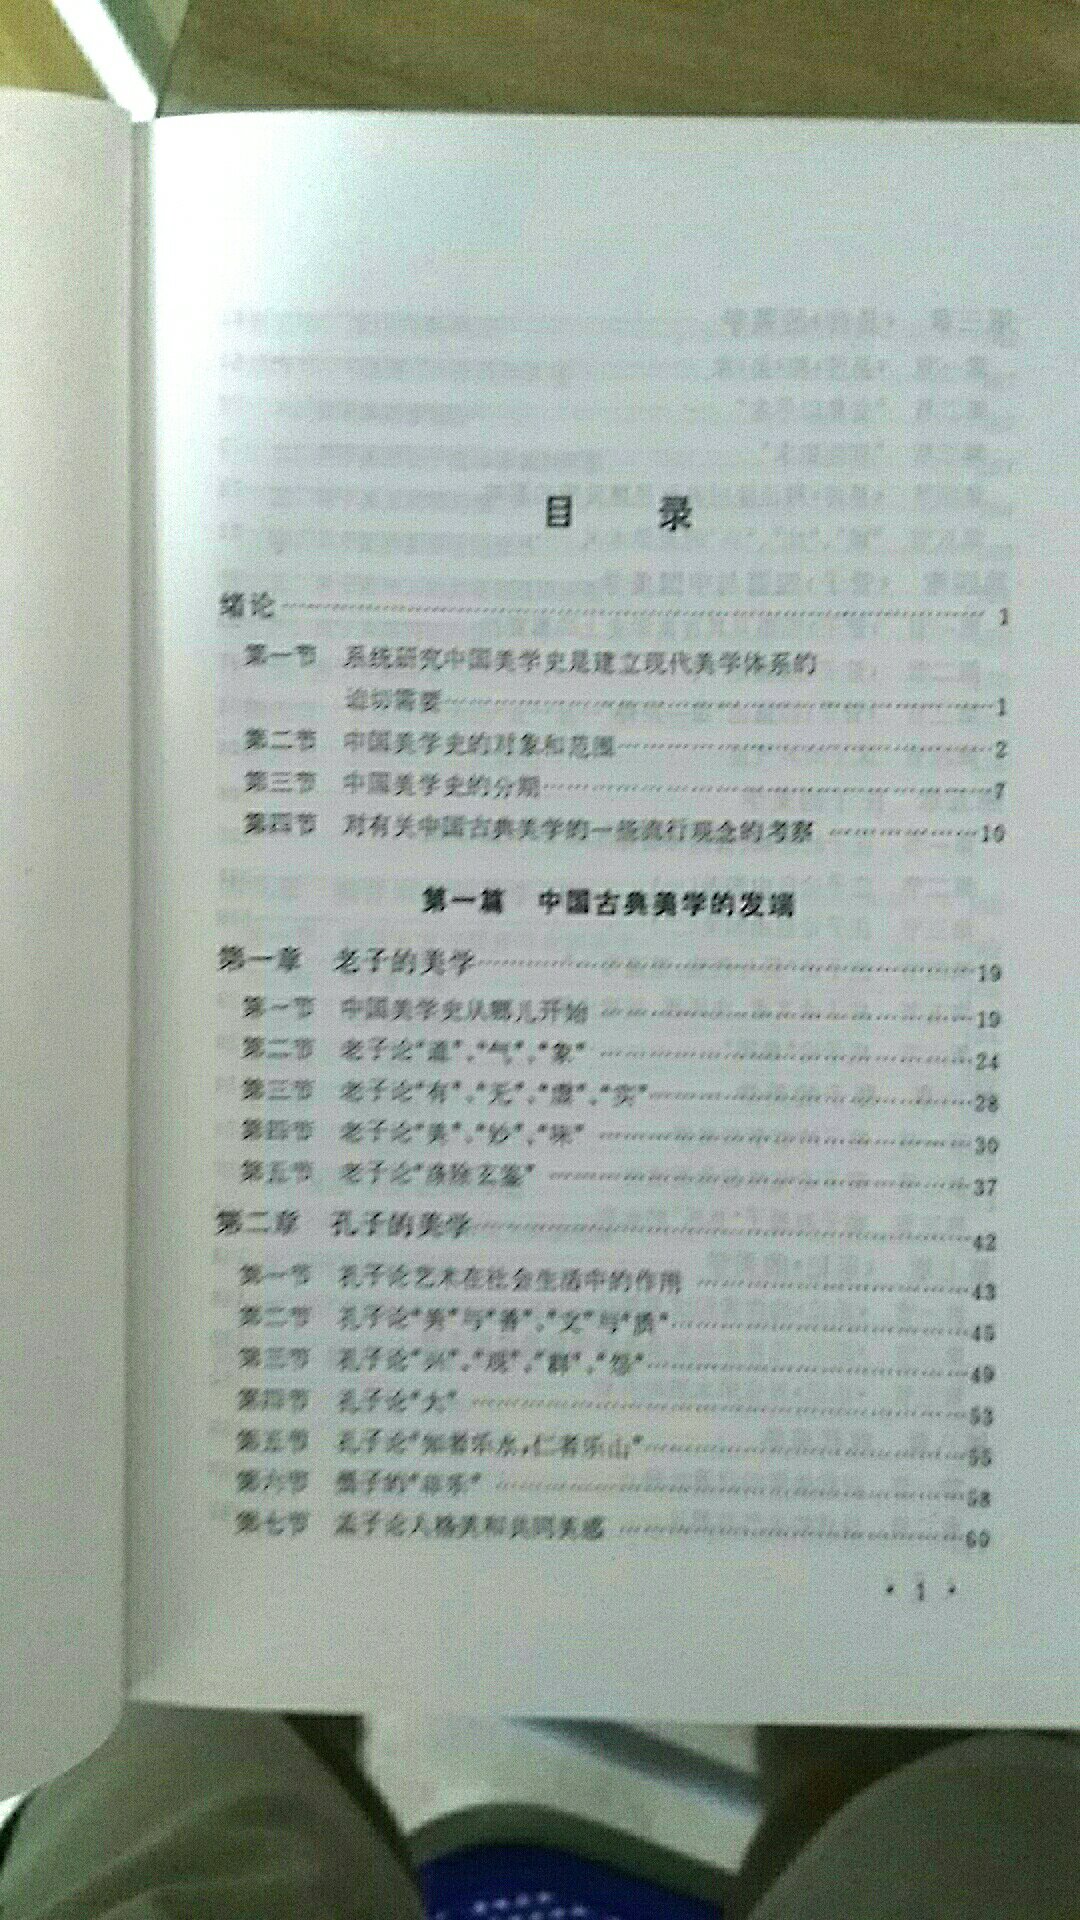 经典著作，学习中国美学的必备书，很值得阅读。